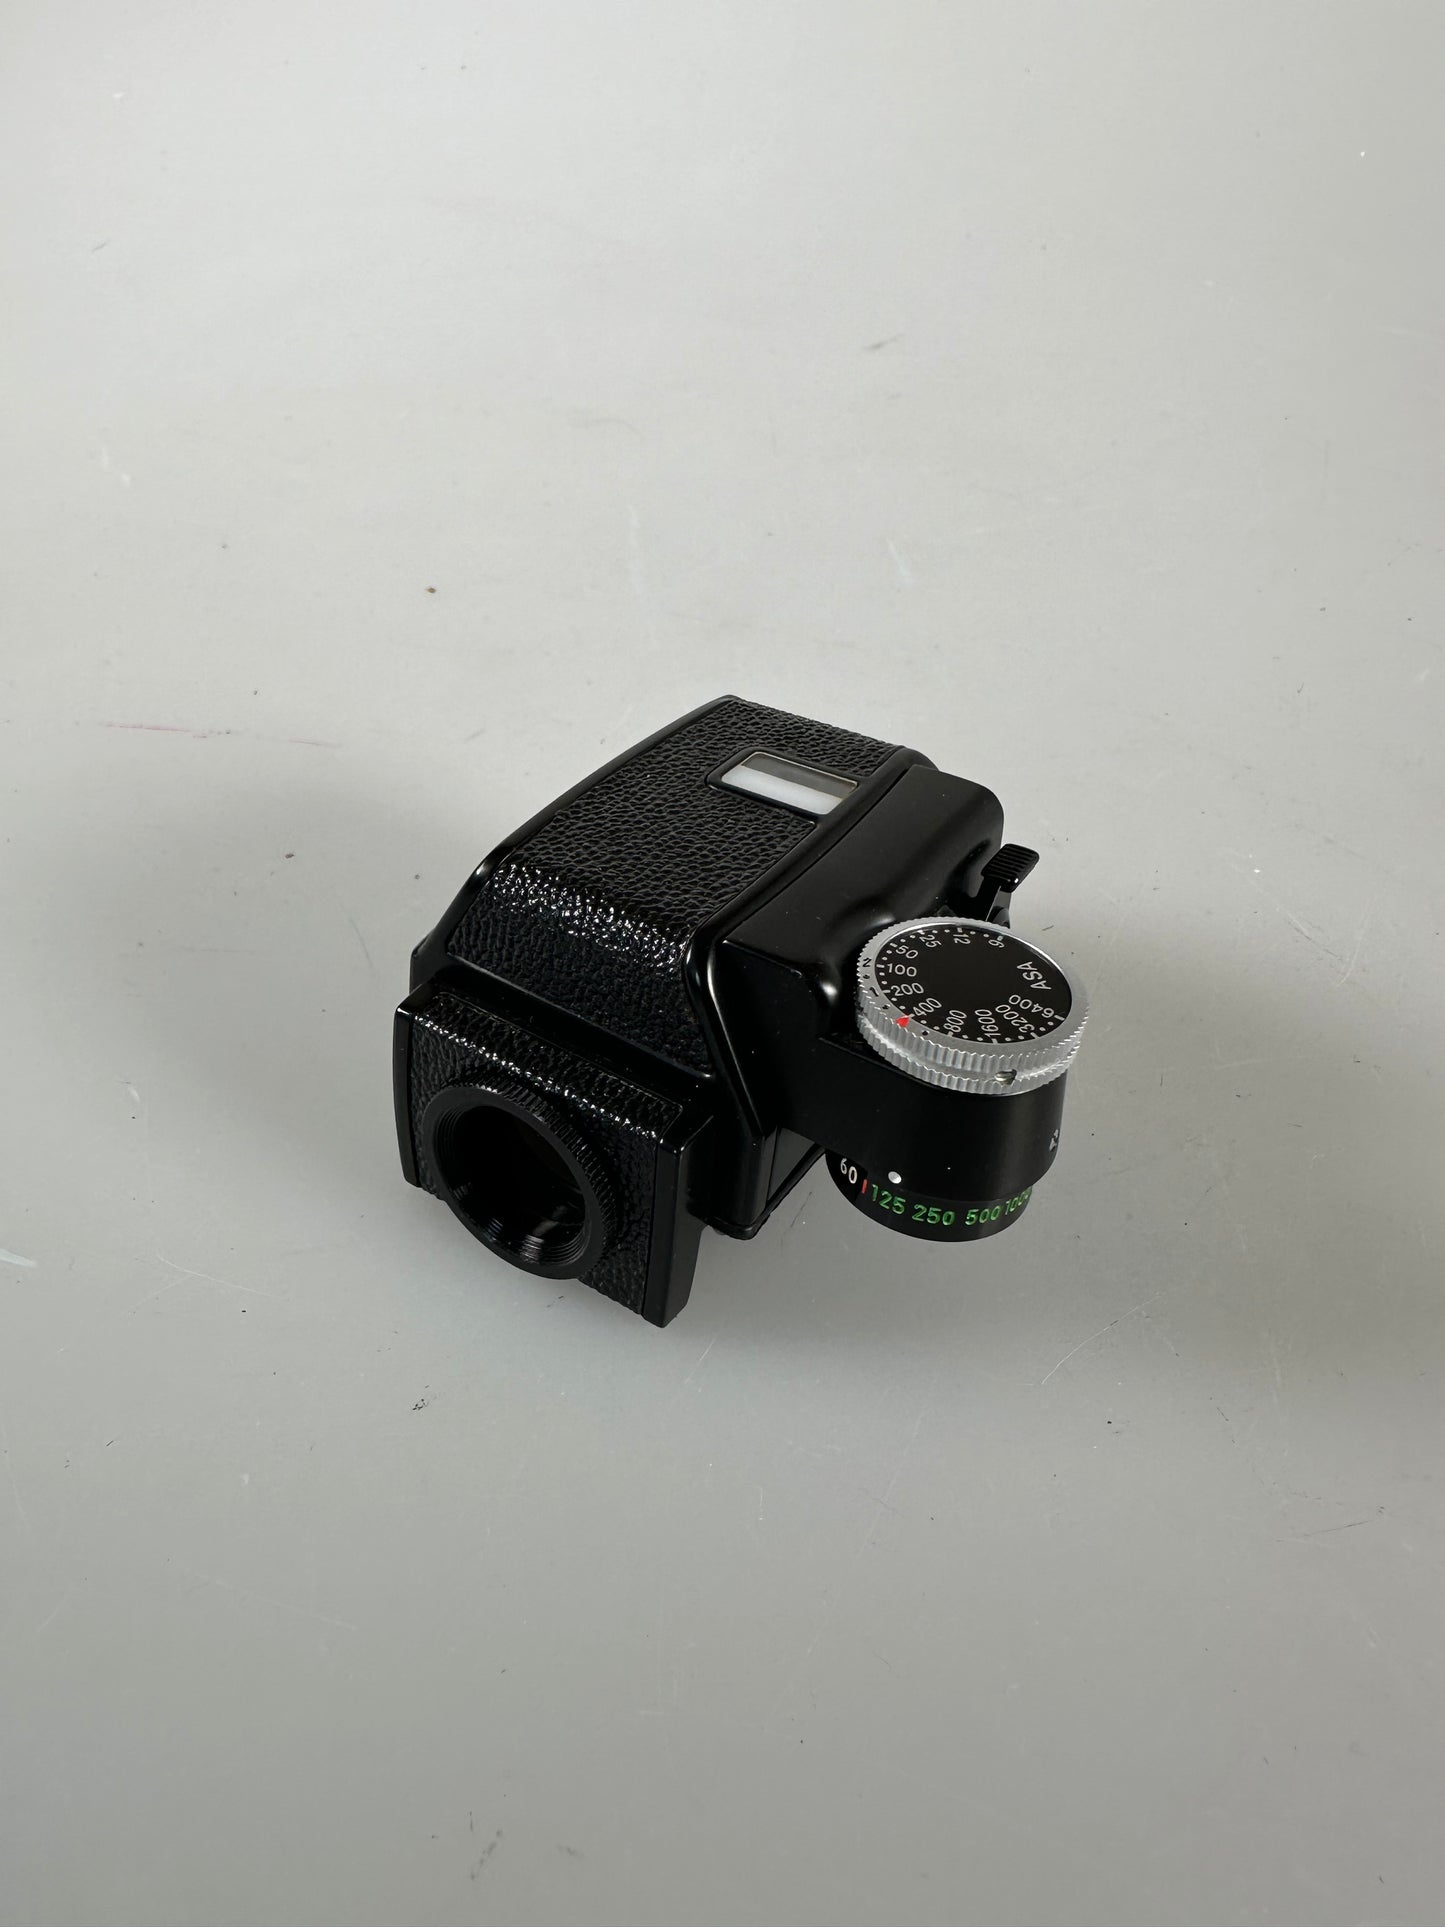 NIKON DP-1 Finder for F2 Camera - Viewfinder